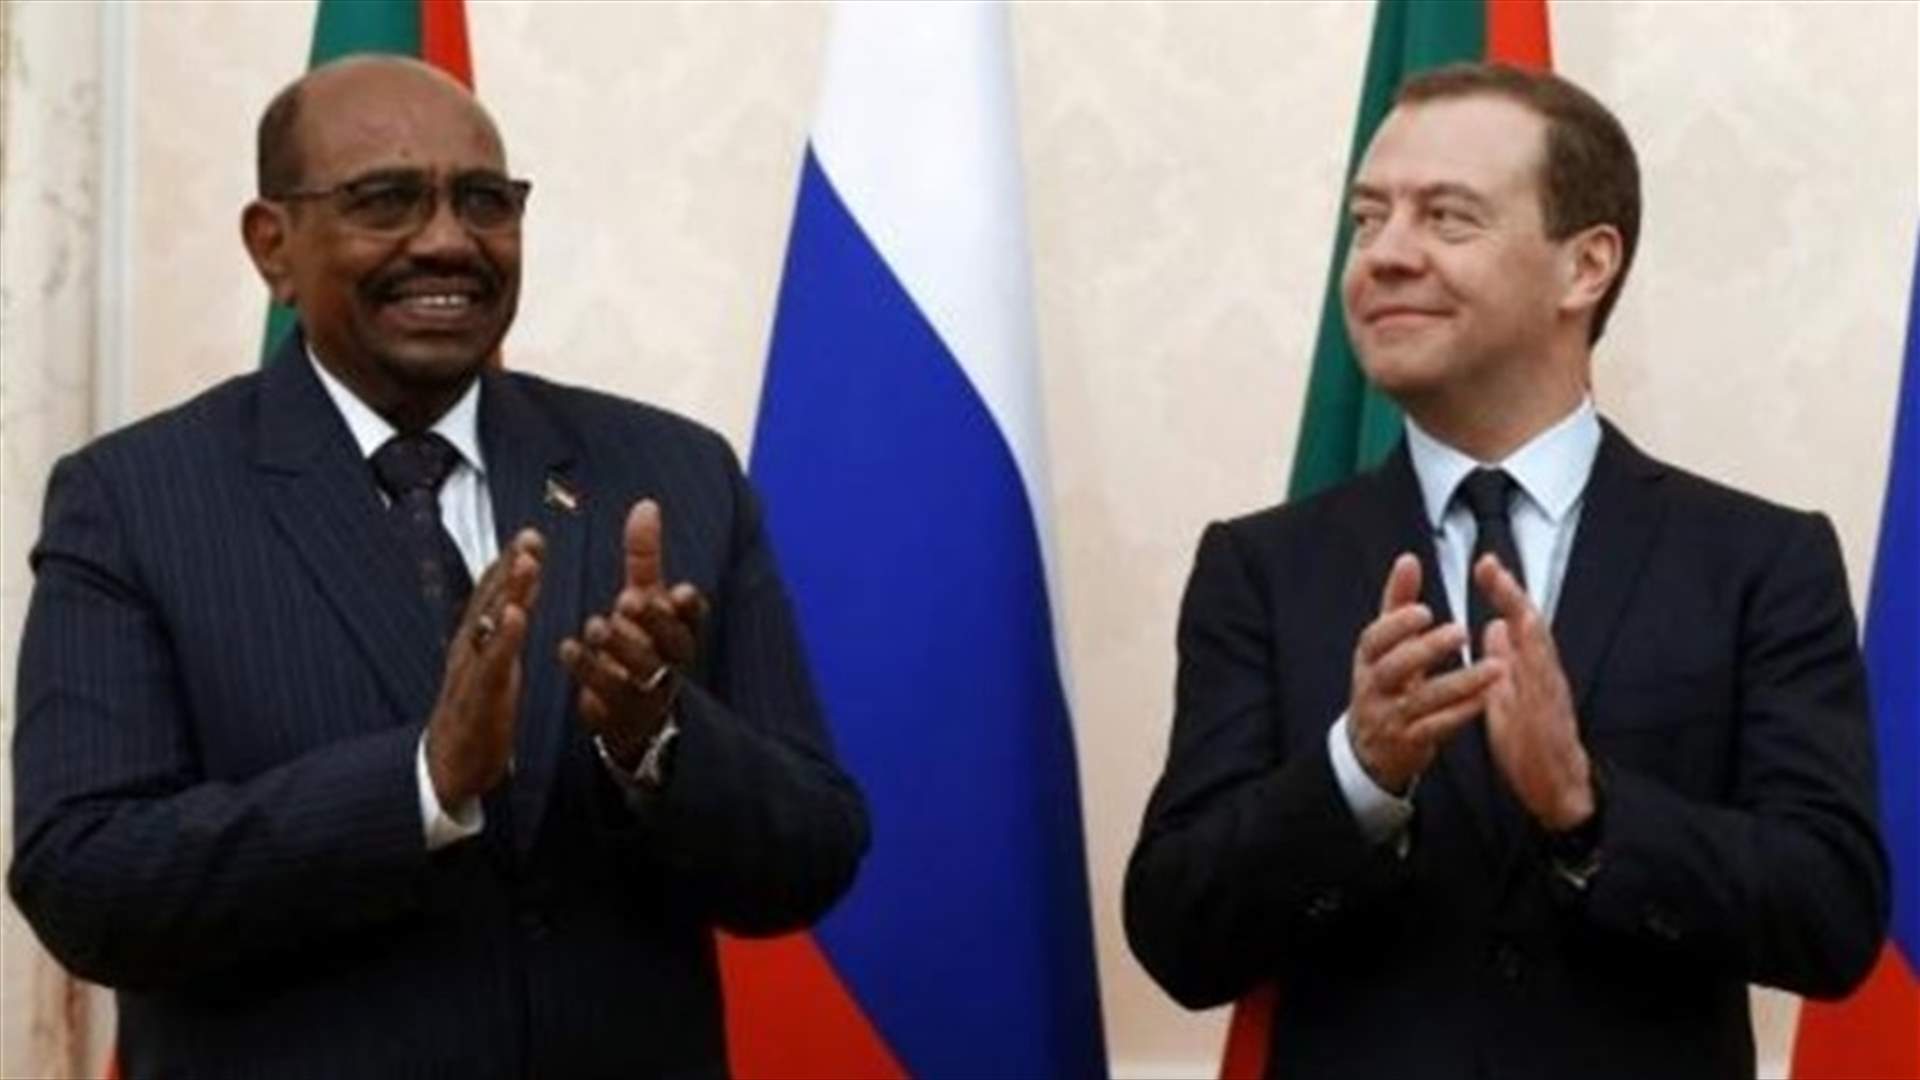 اتفاق للتعاون في مجال الطاقة النووية المدنية بين روسيا والسودان